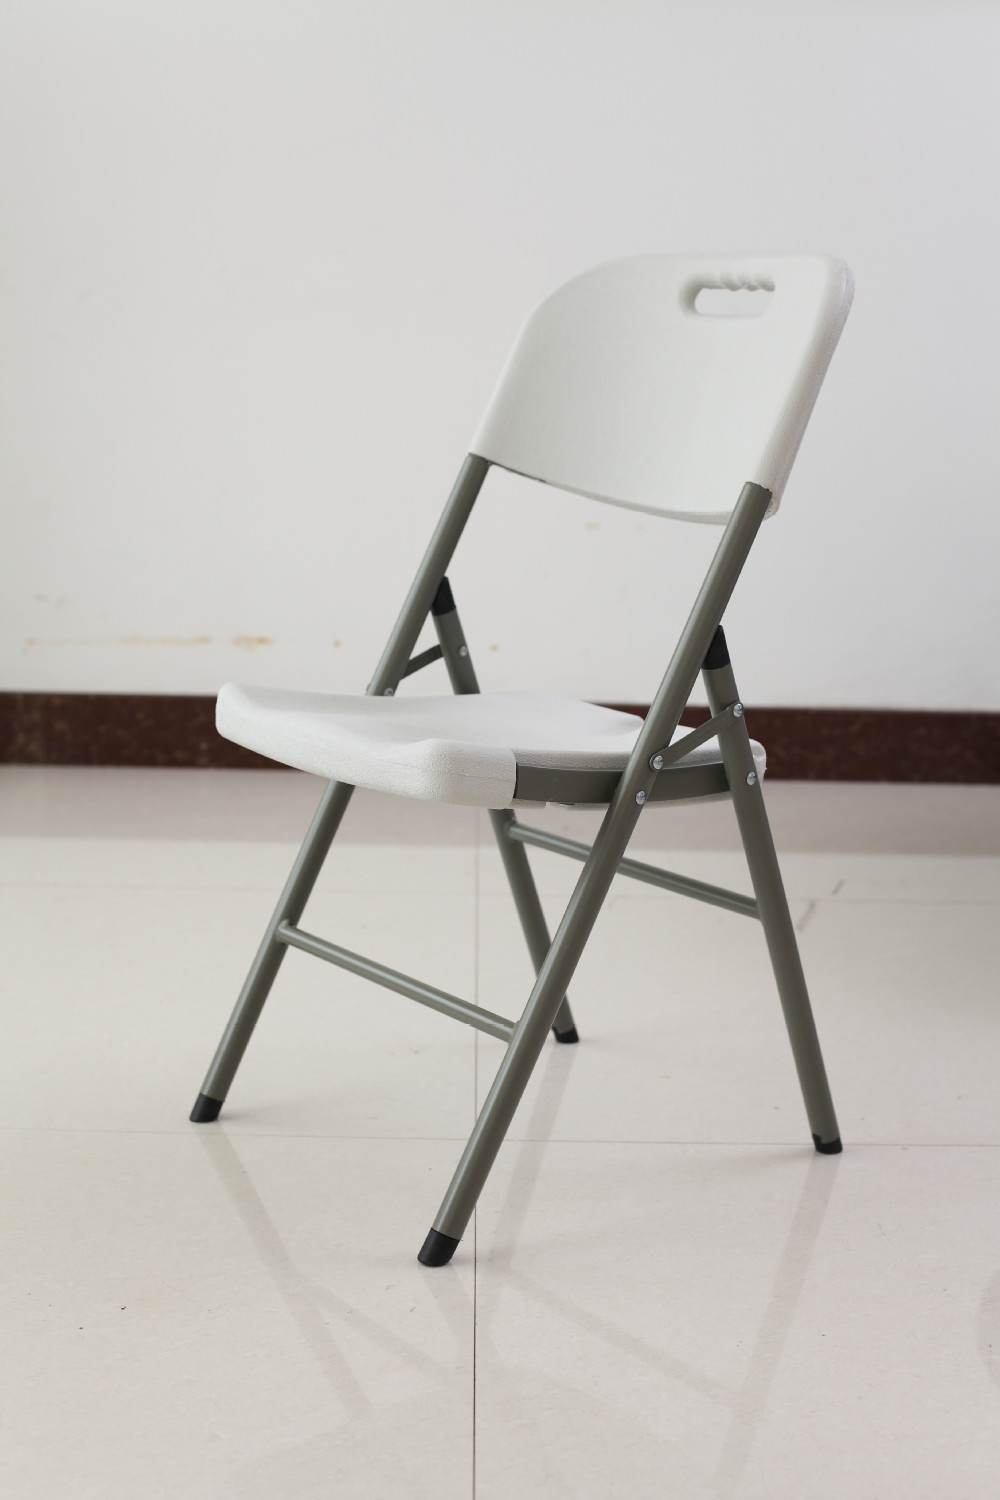 Складная мебель Складной стул 1212NM